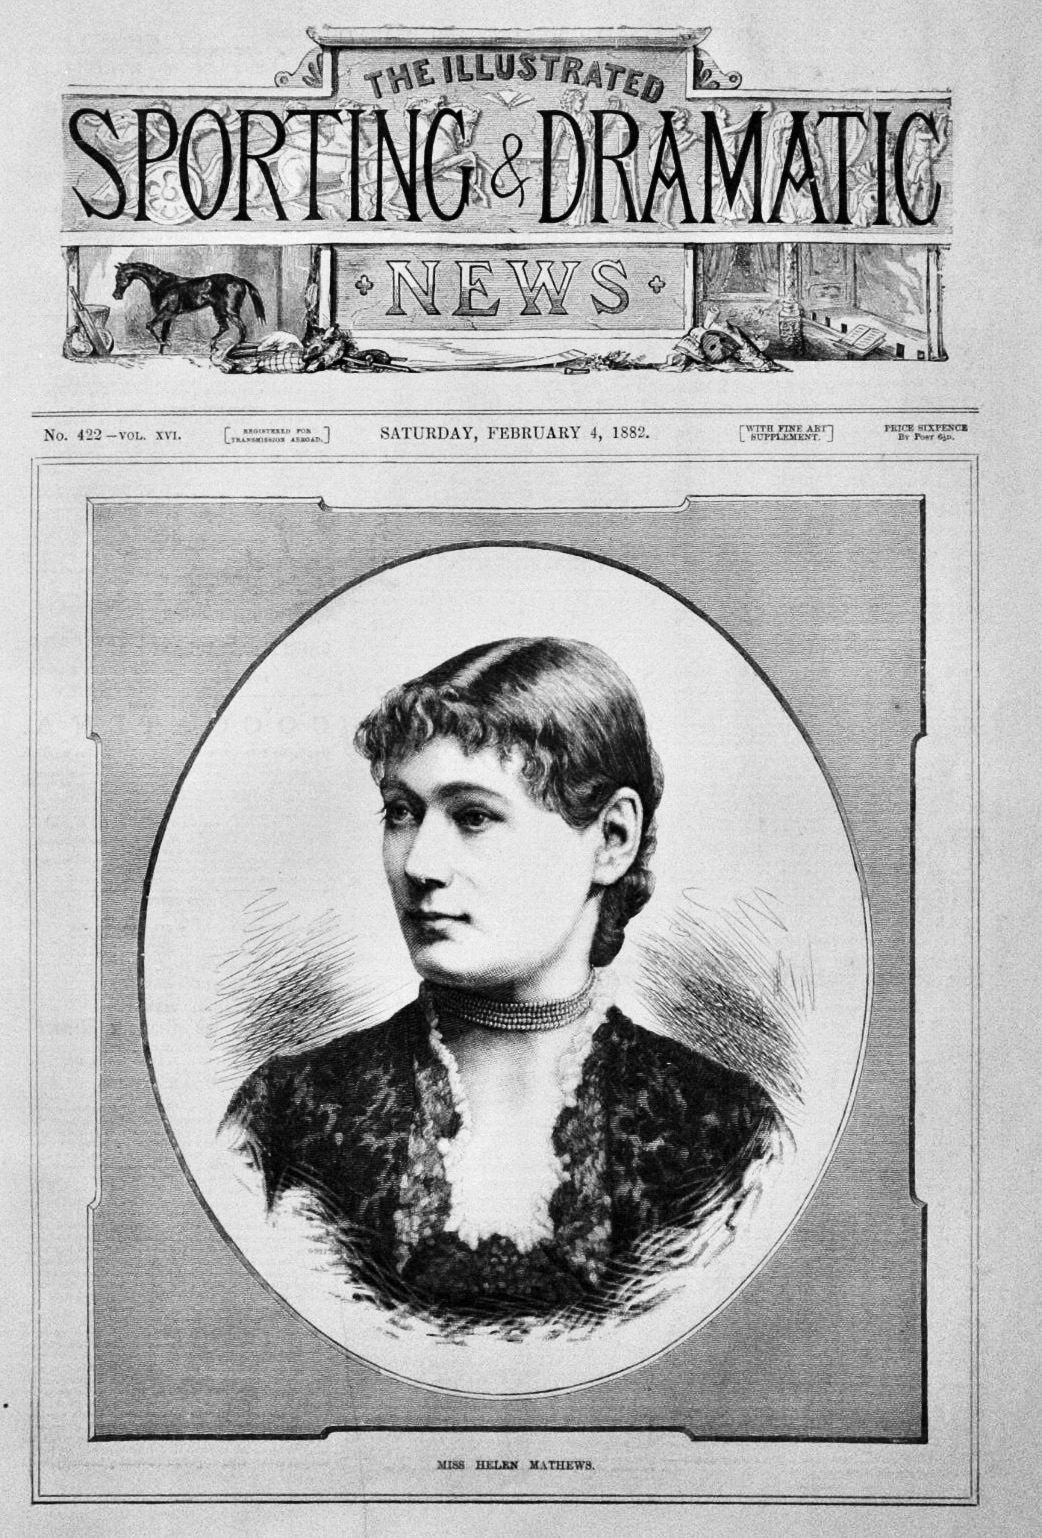 Miss Helen Mathews.  1882.